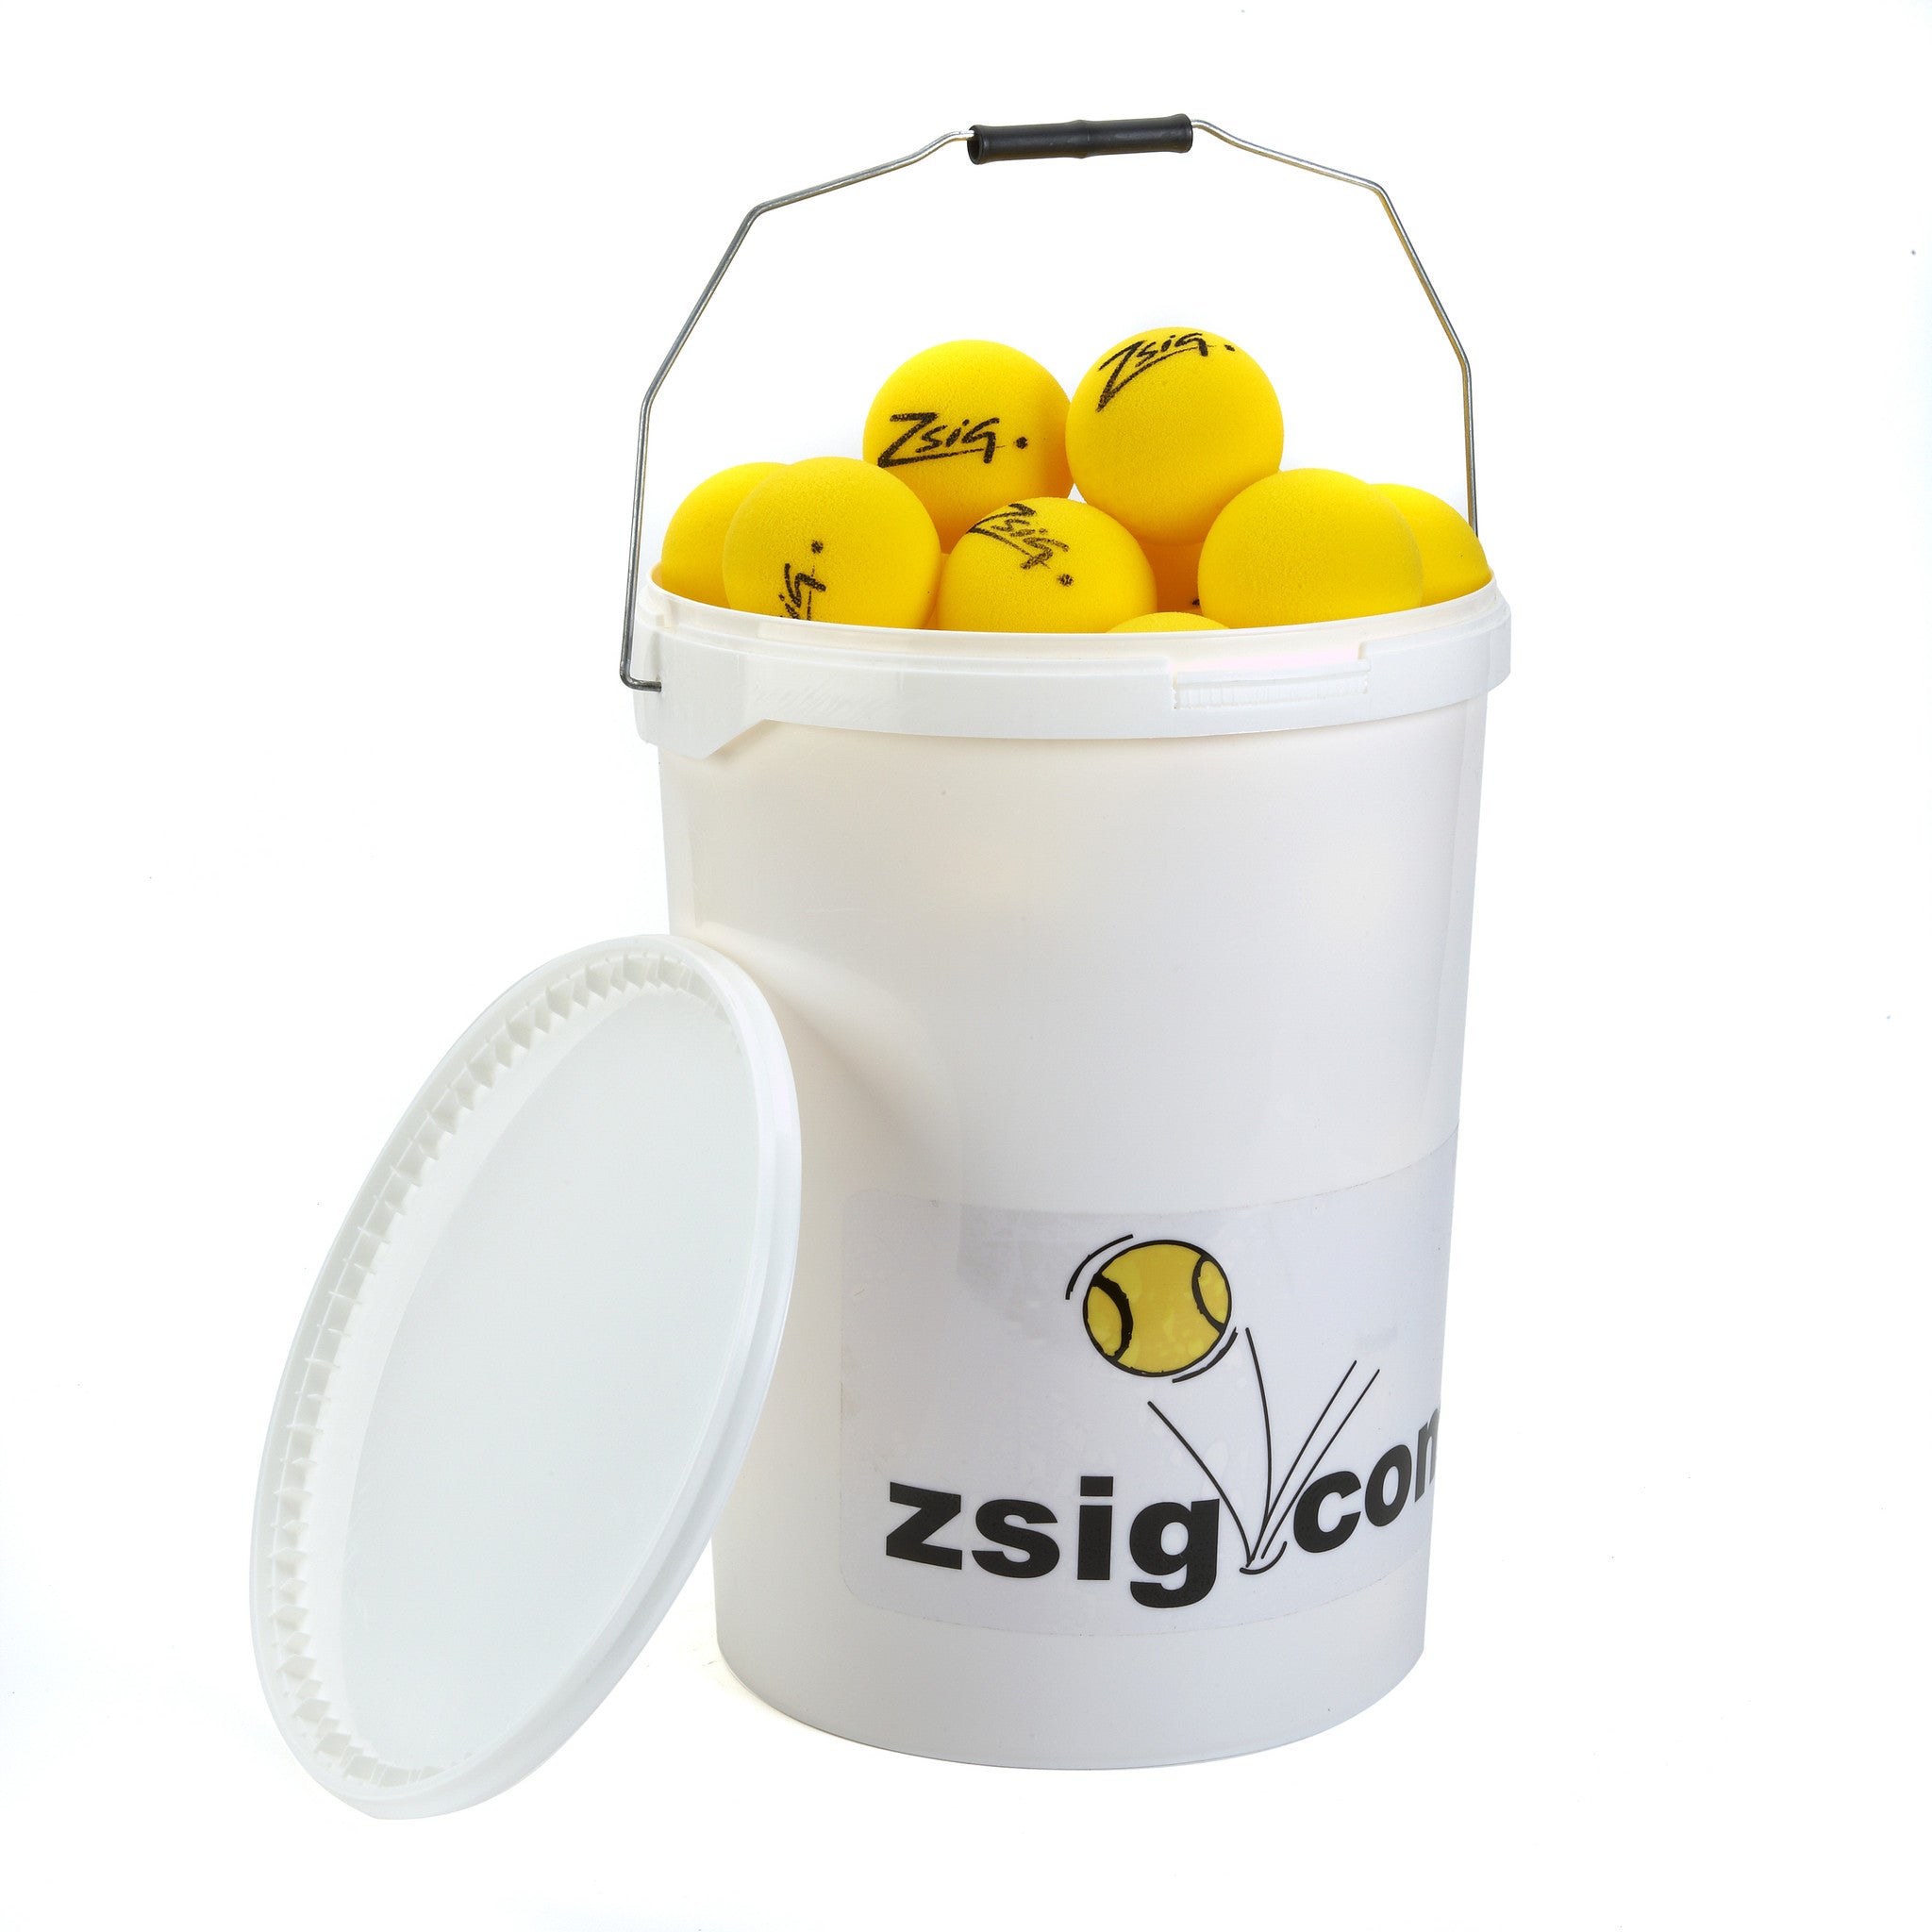 Zsig Matchplay 8 tournament Mini Tennis Balls in a 4-dozen ball bucket